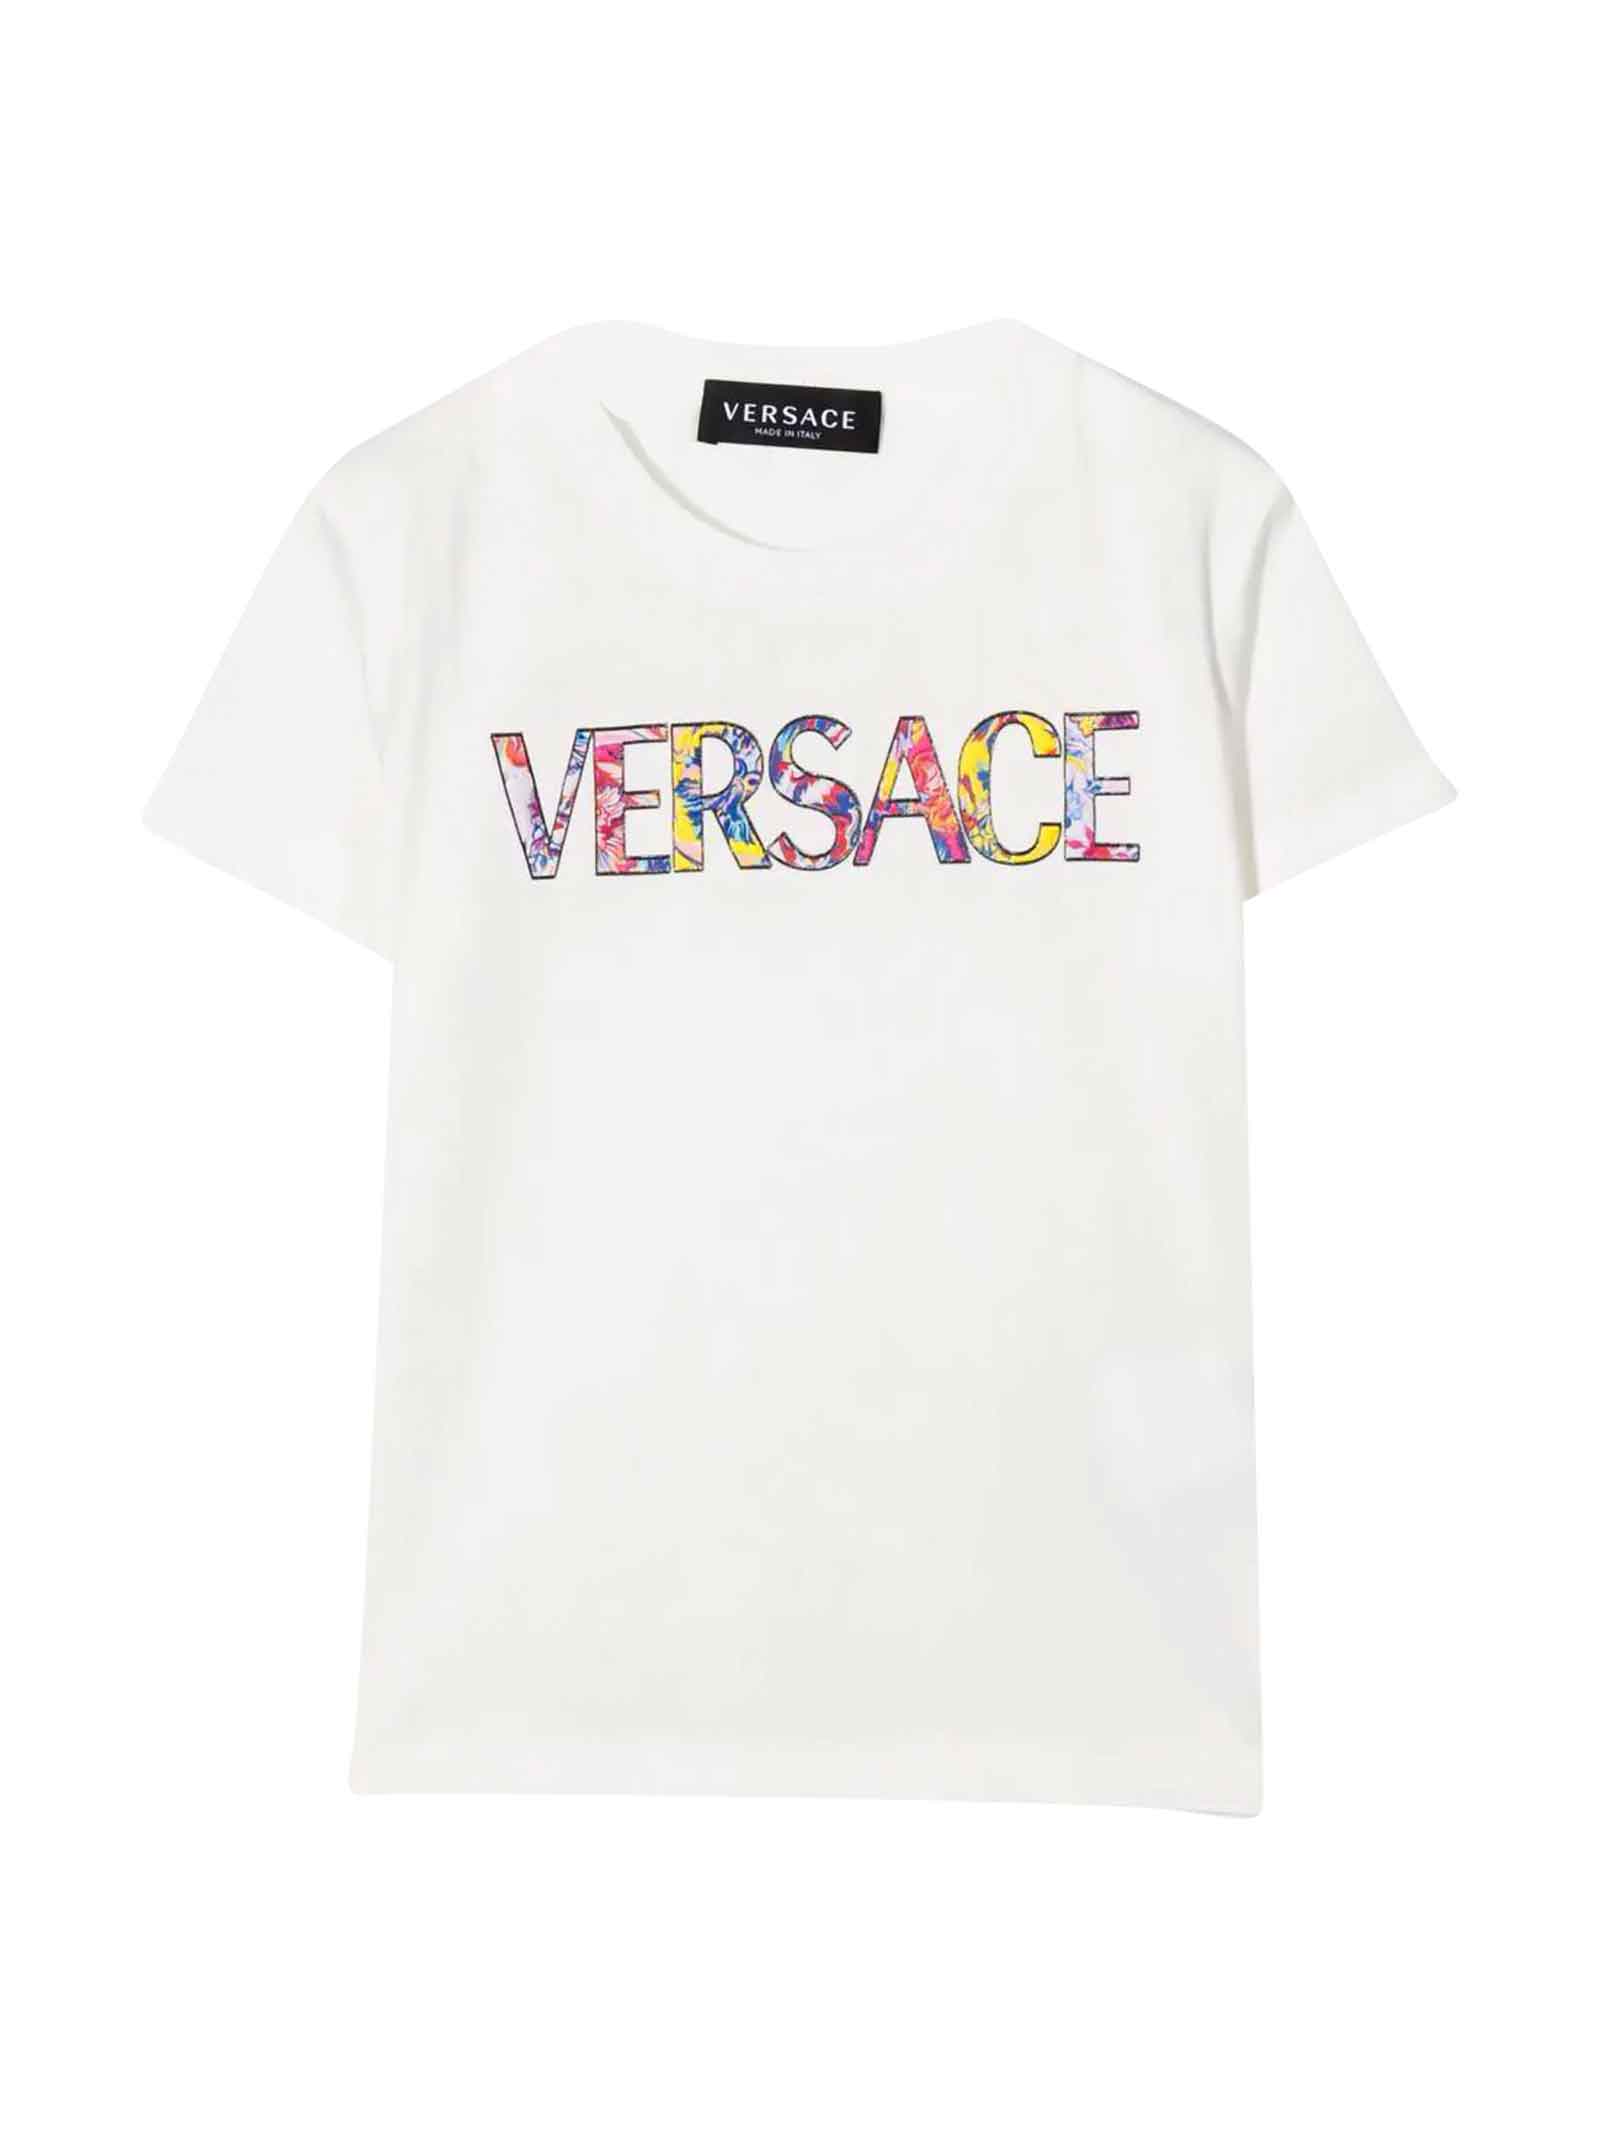 Versace White T-shirt Unisex Kids.